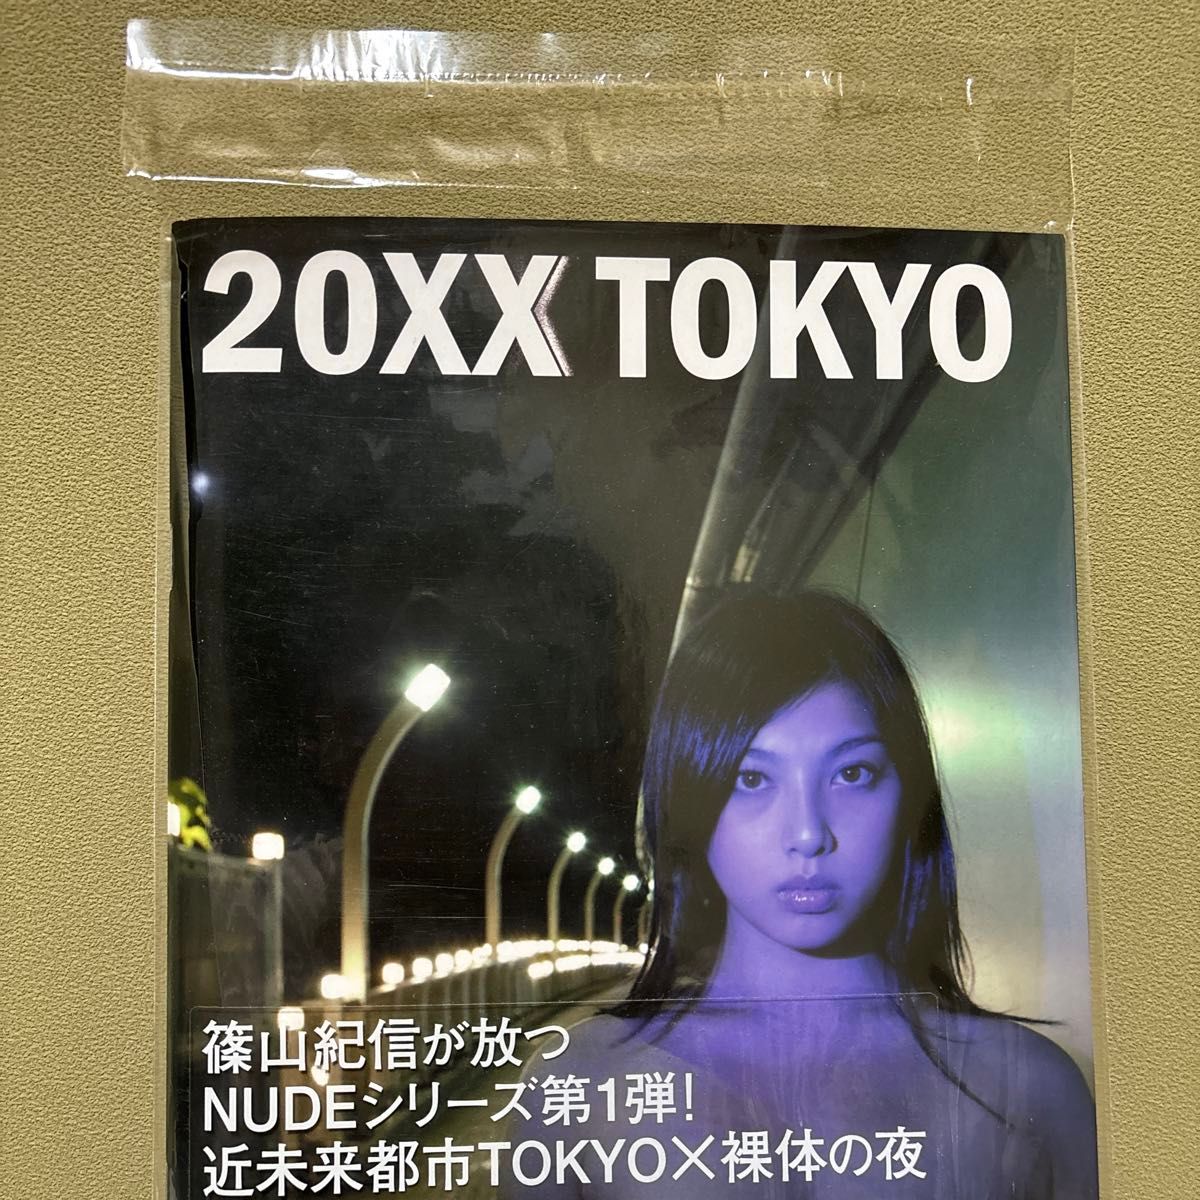 NO NUDE by KISHIN 1 20XX TOKYO